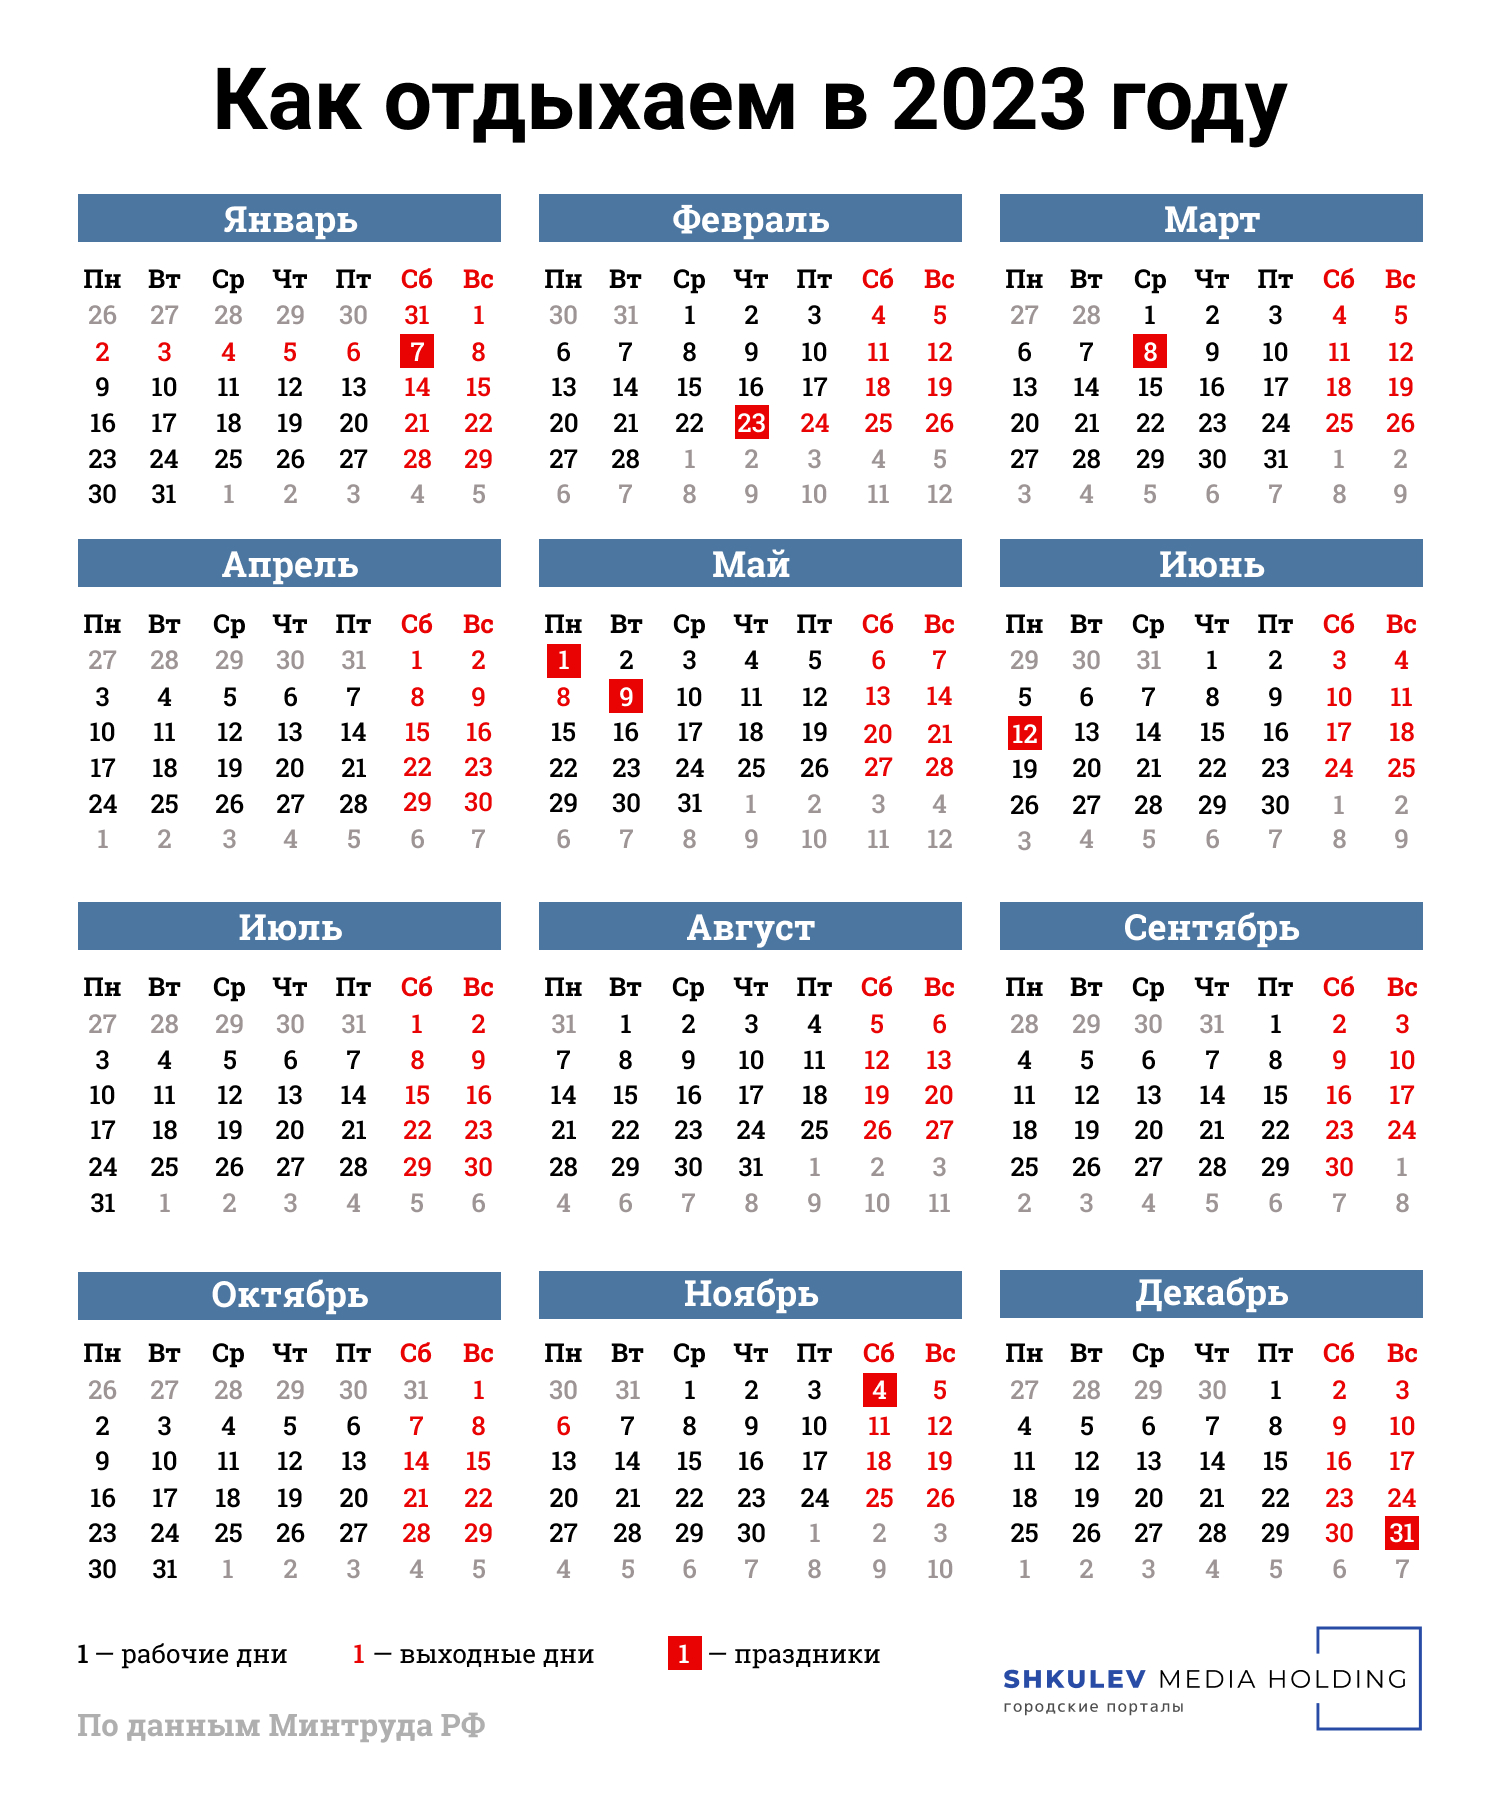 Сохраняйте себе календарь, чтобы не забыть